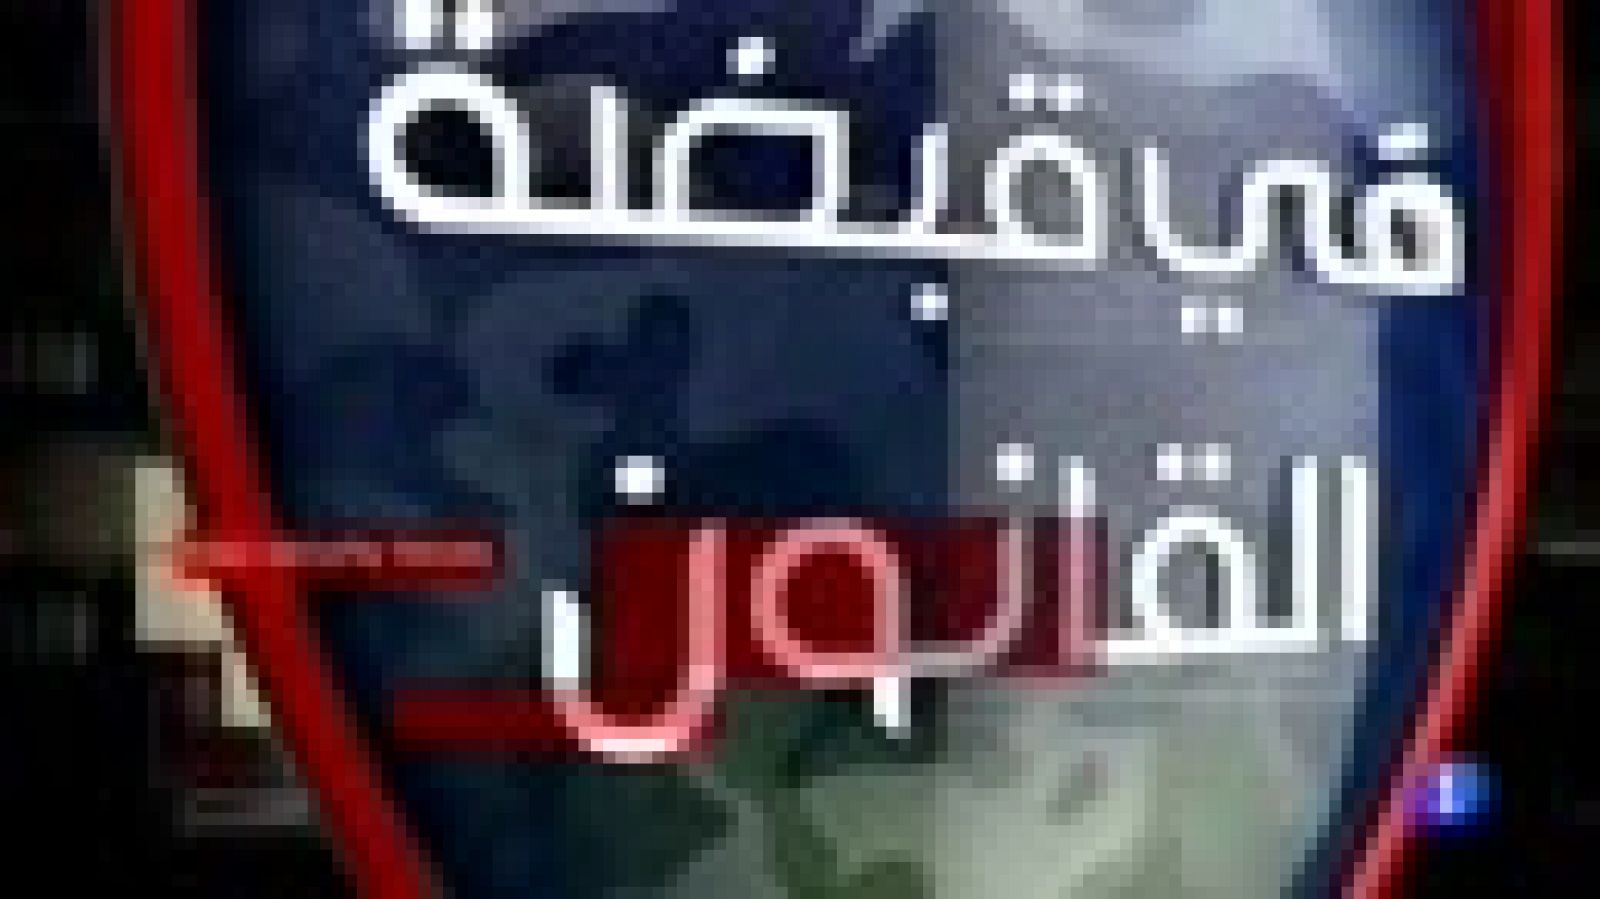 Irak televisión: 'En manos de la ley', el programa iraquí que entrevista a yihadistas arrepentidos